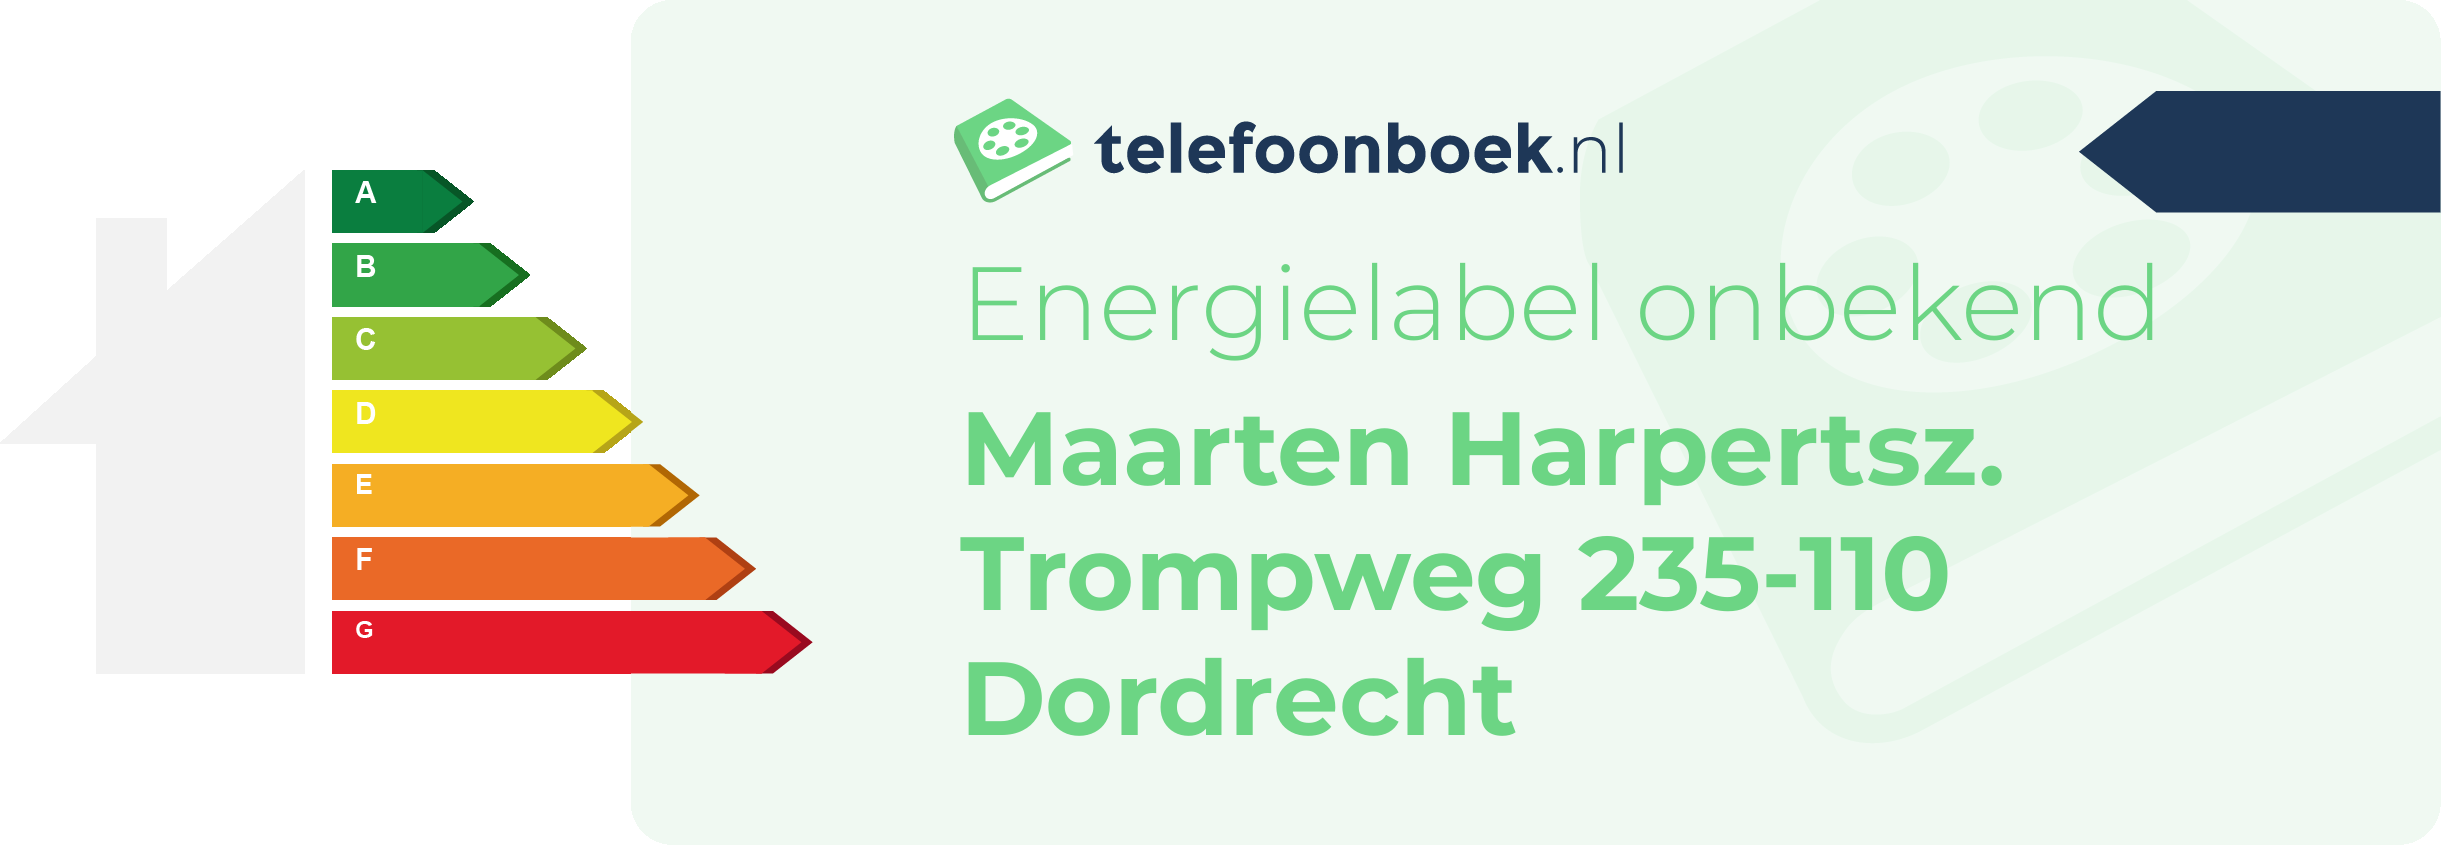 Energielabel Maarten Harpertsz. Trompweg 235-110 Dordrecht